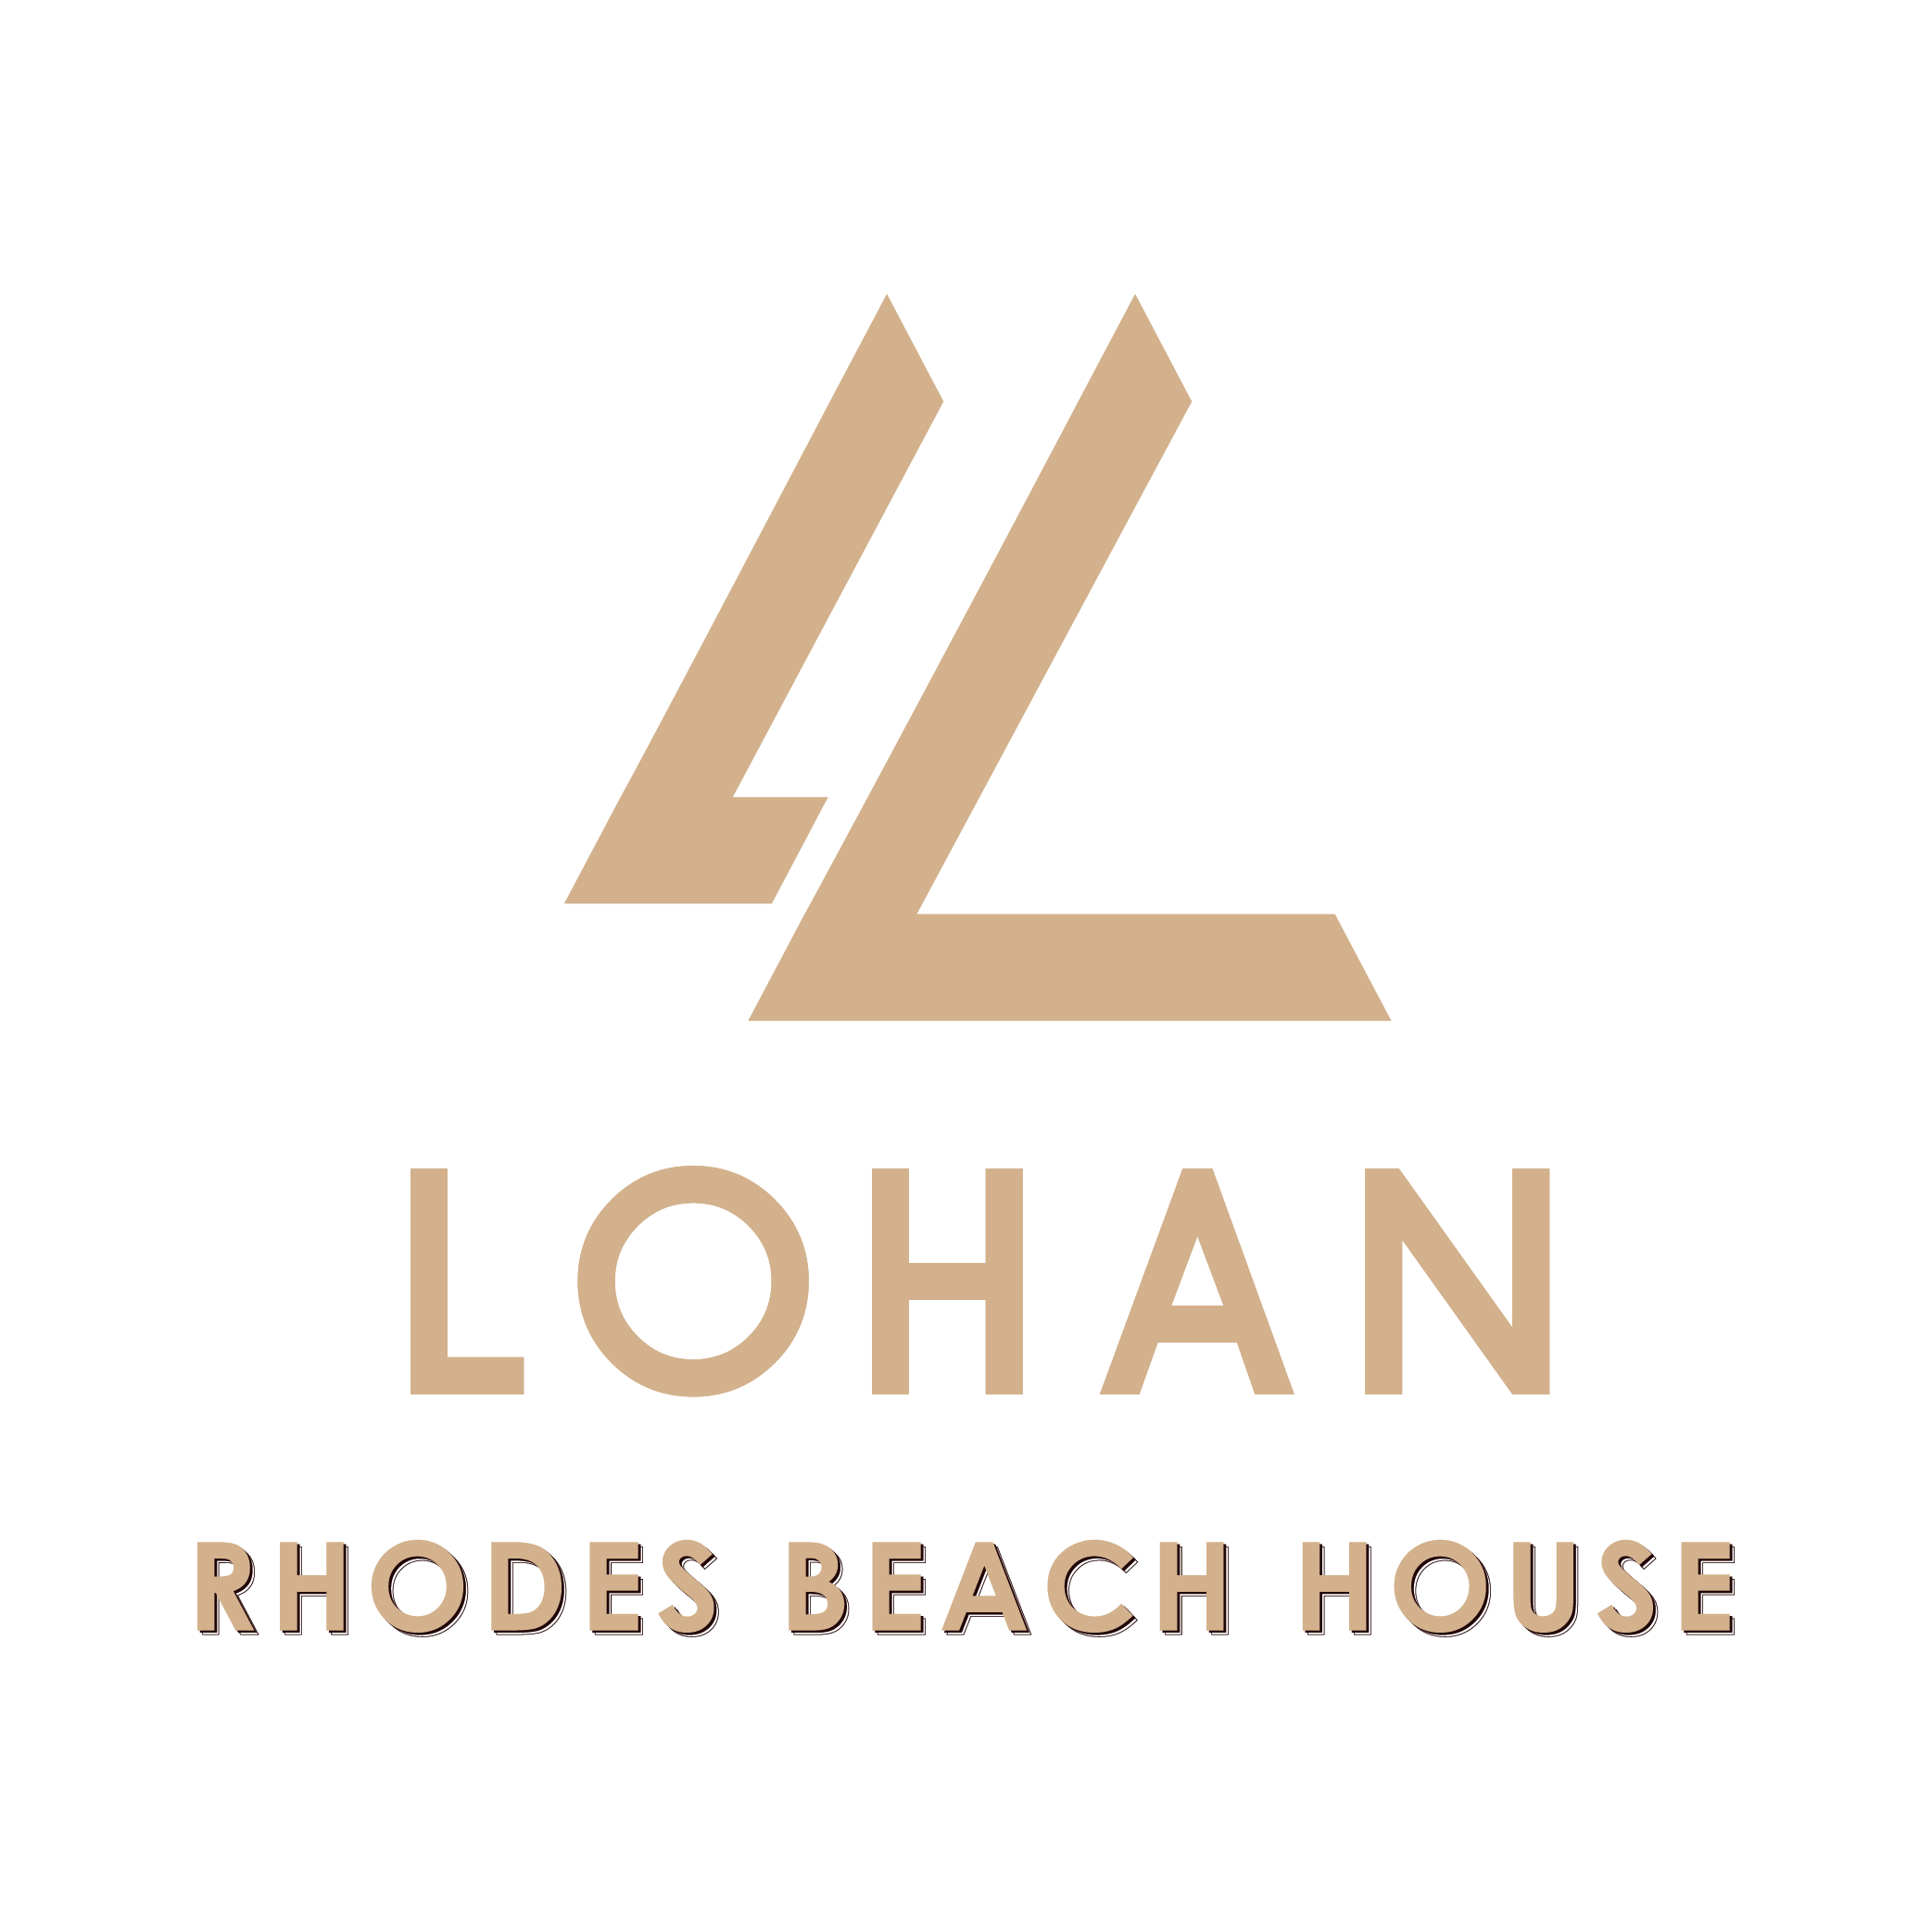 Rhodes Logo - Lohan Rhodes Beach House